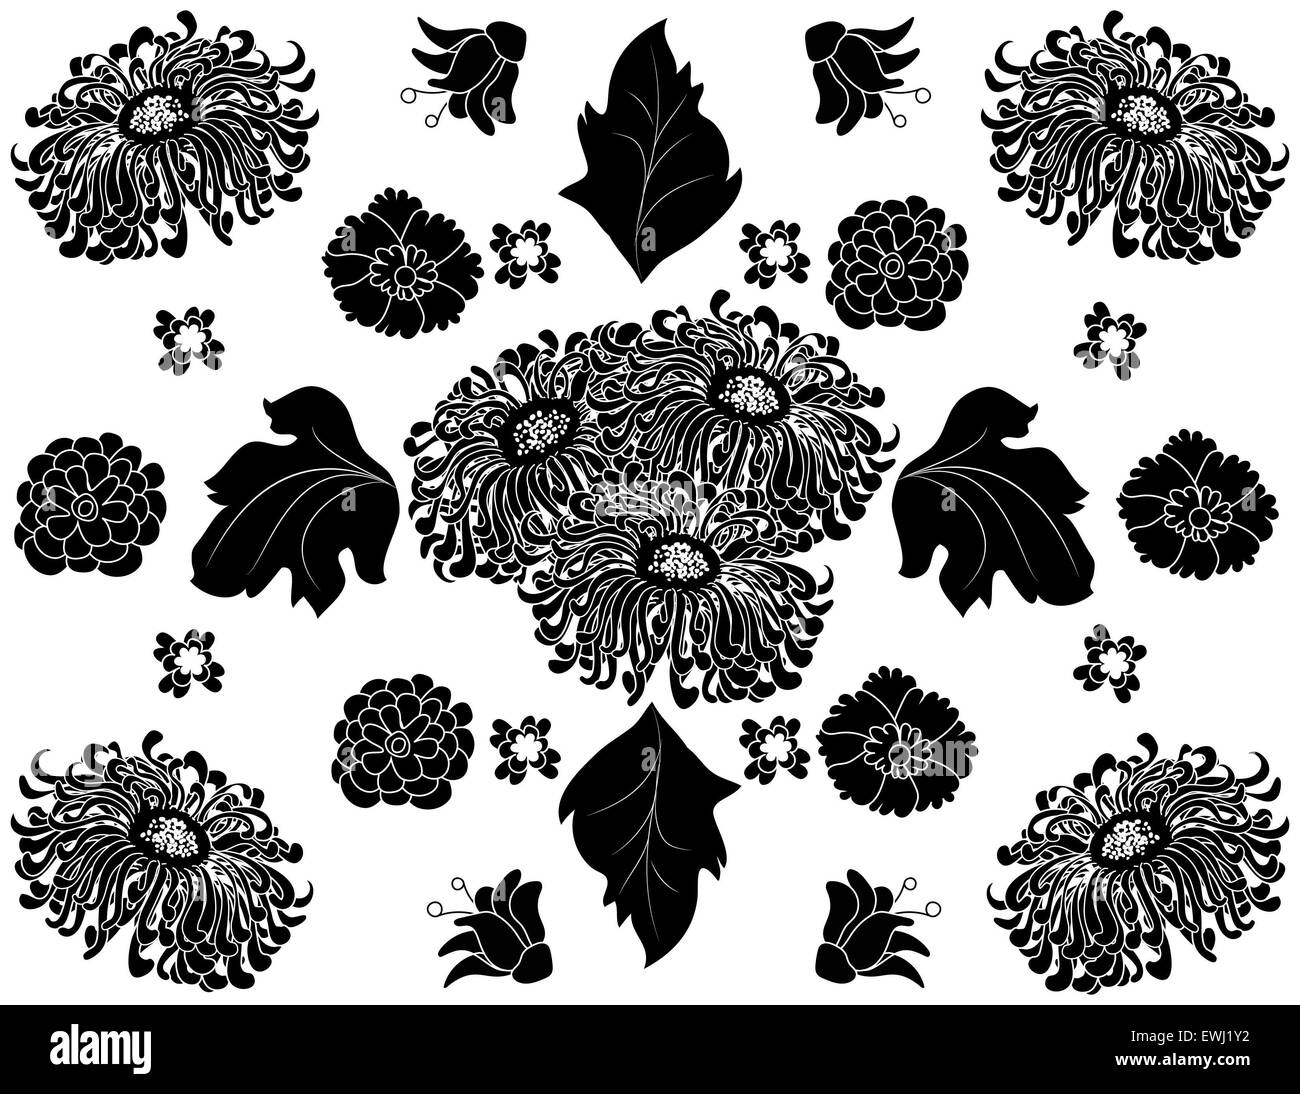 Originale composizione floreale in bianco e nero per decorare tutti i tuoi spazi whit crisantemi Foto Stock